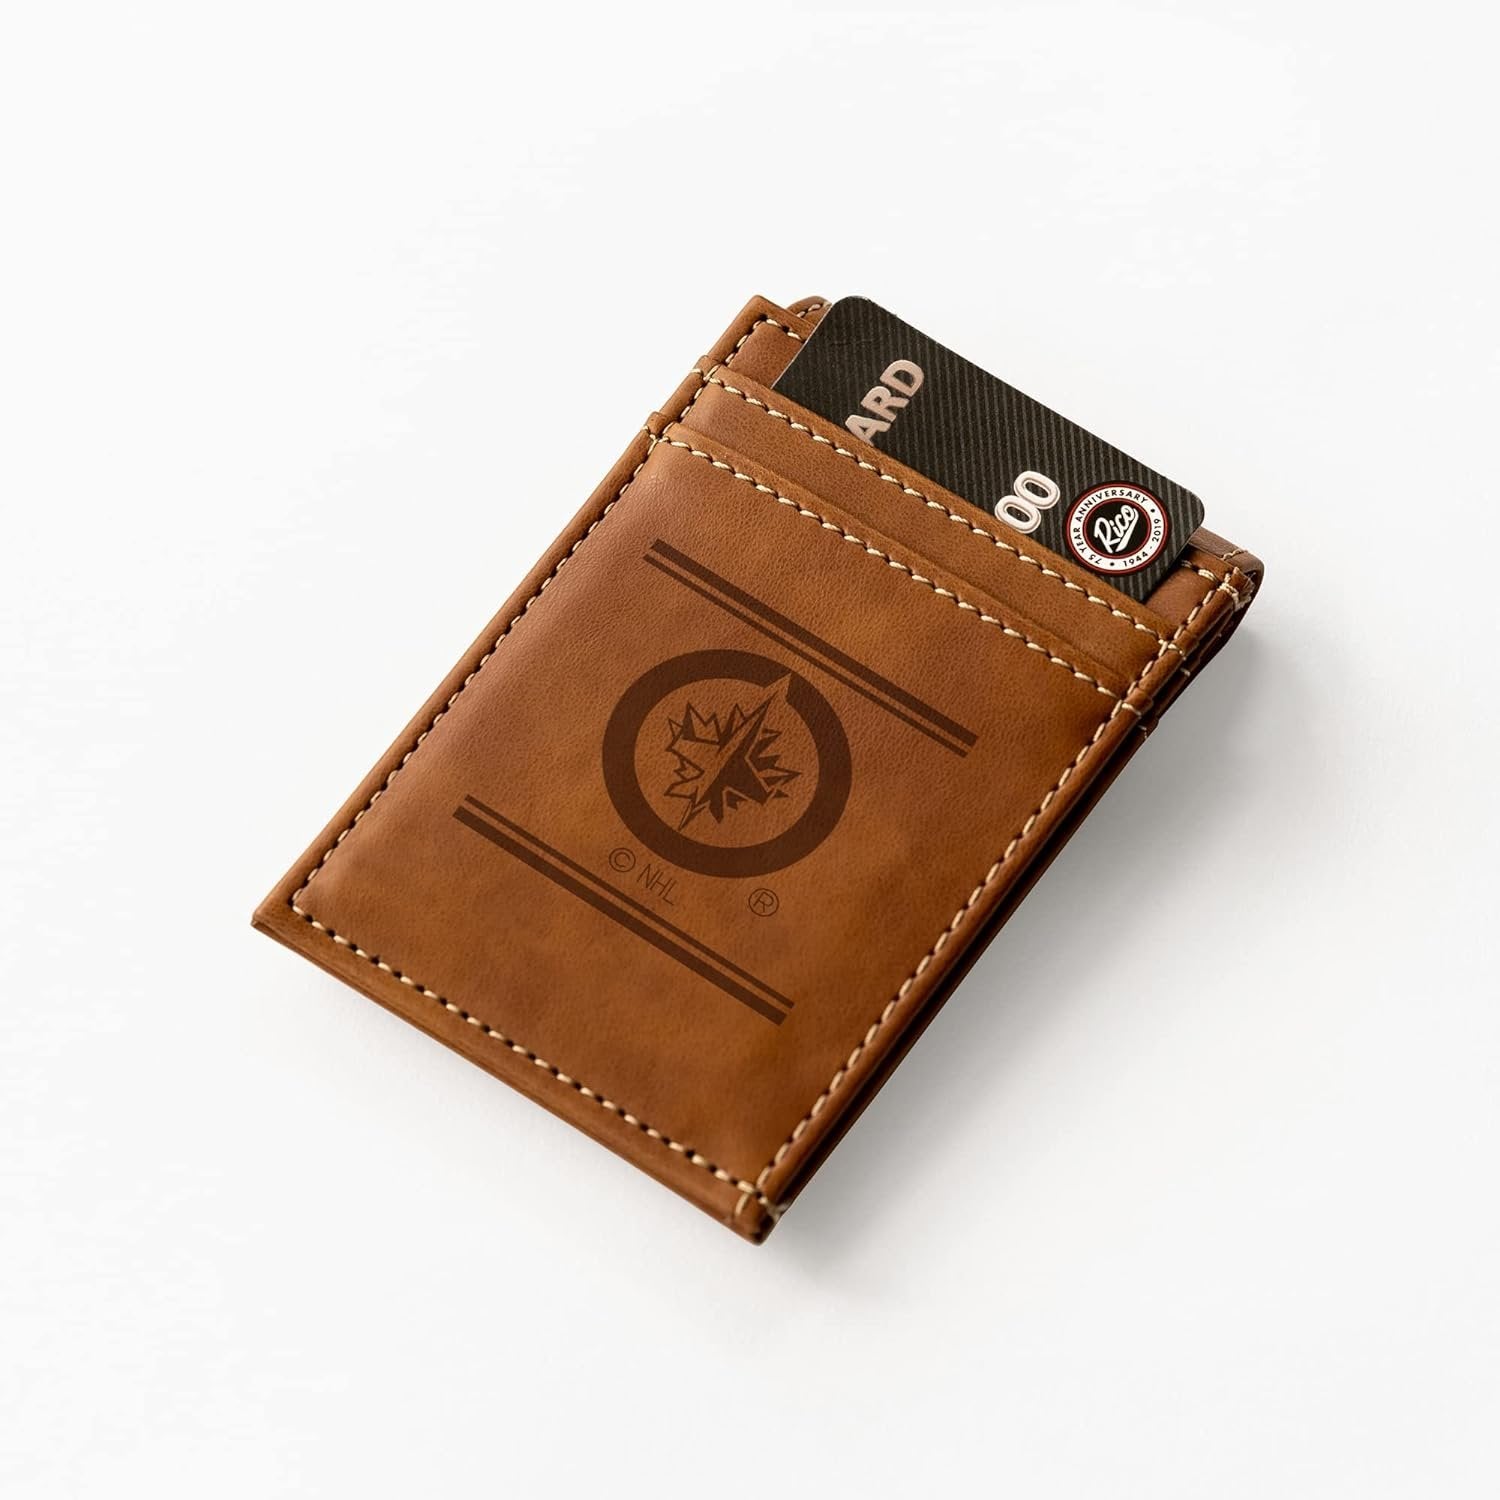 Winnipeg Jets Premium Brown Leather Wallet, Front Pocket Magnetic Money Clip, Laser Engraved, Vegan